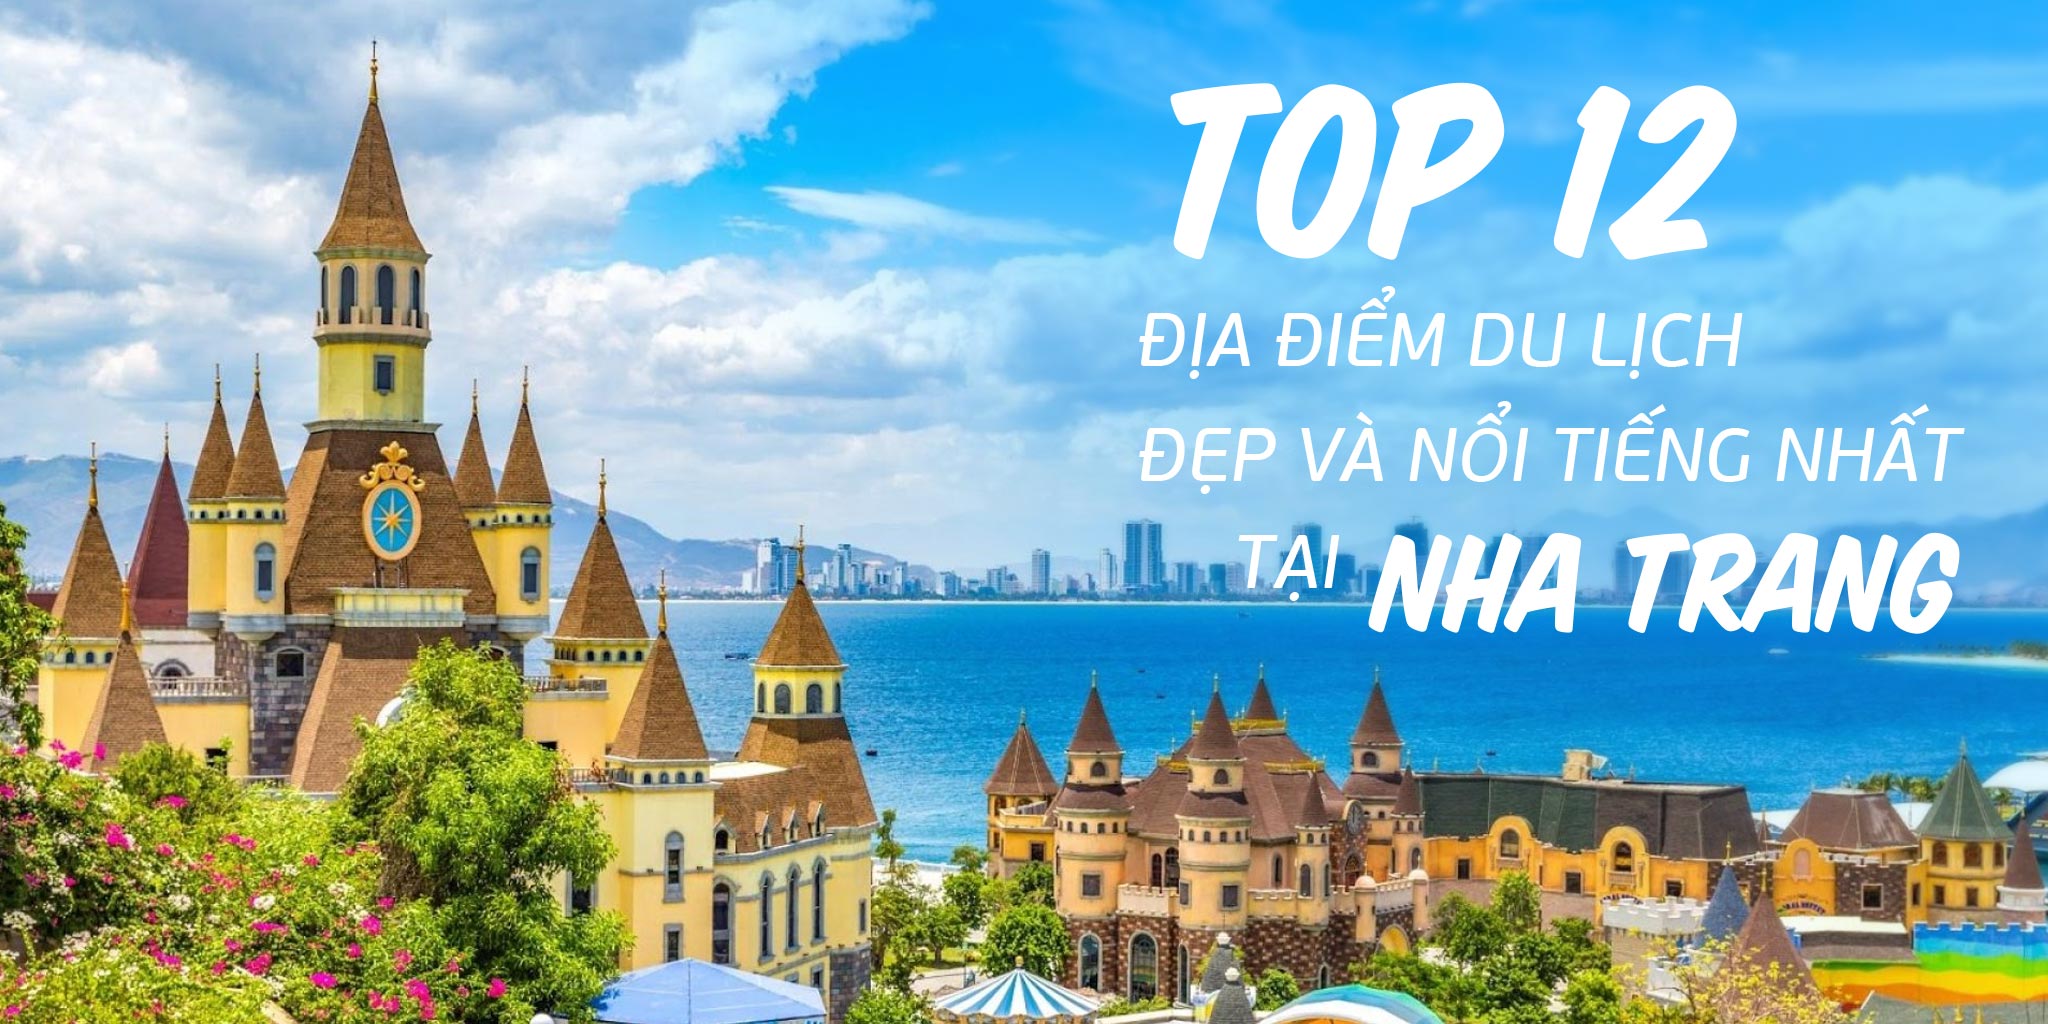 Top 12 địa điểm du lịch đẹp và nổi tiếng nhất Nha Trang